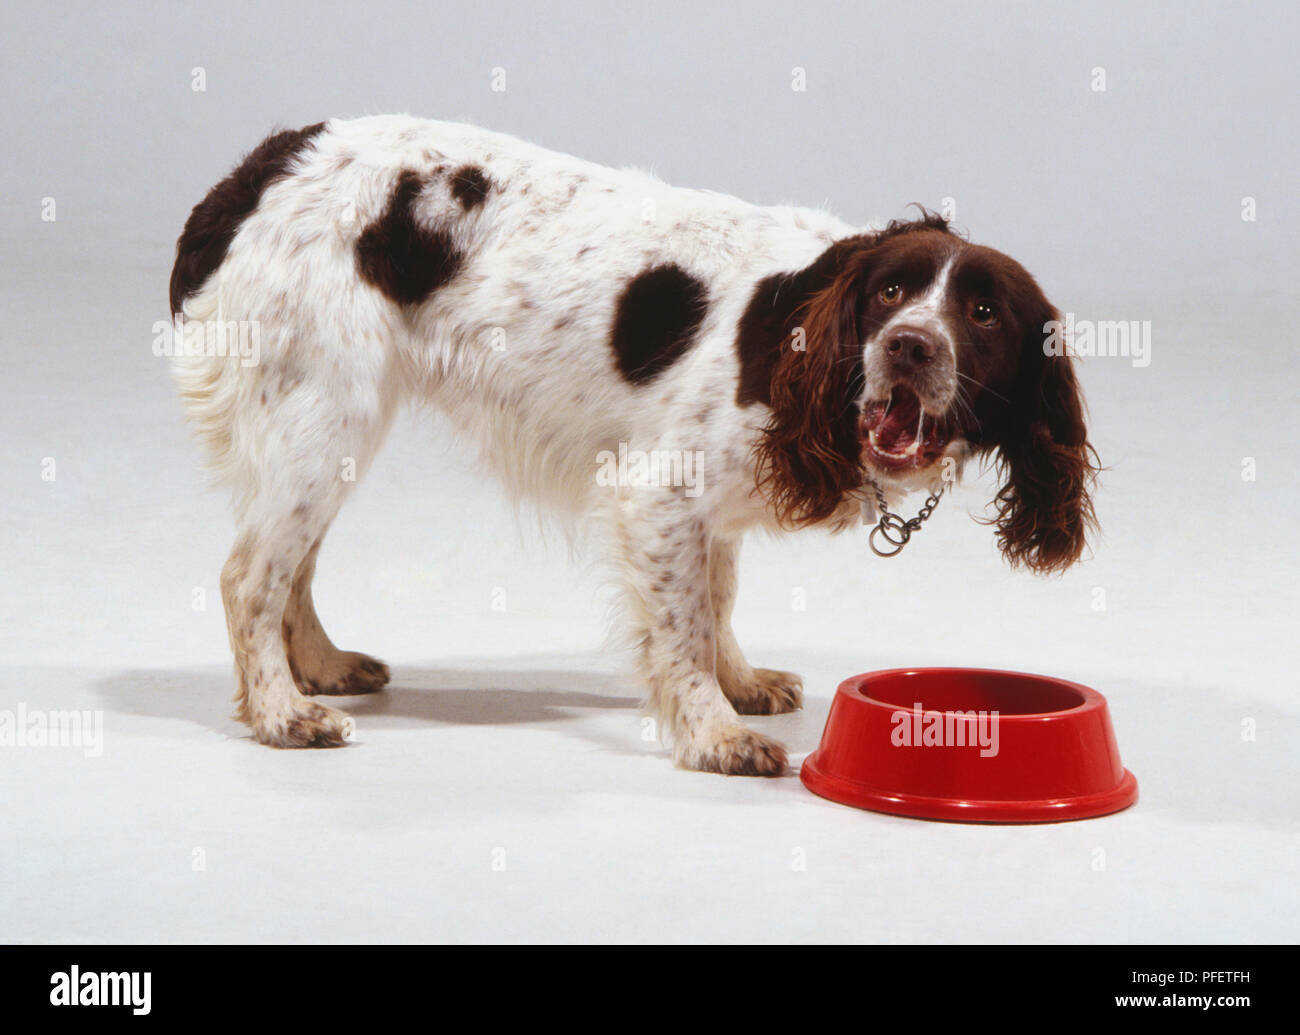 Ein Bretagne oder Spaniel hund mit gefleckten Fell und hängenden haarigen Ohren, barks beim Stehen auf einem roten Futternapf. Stockfoto